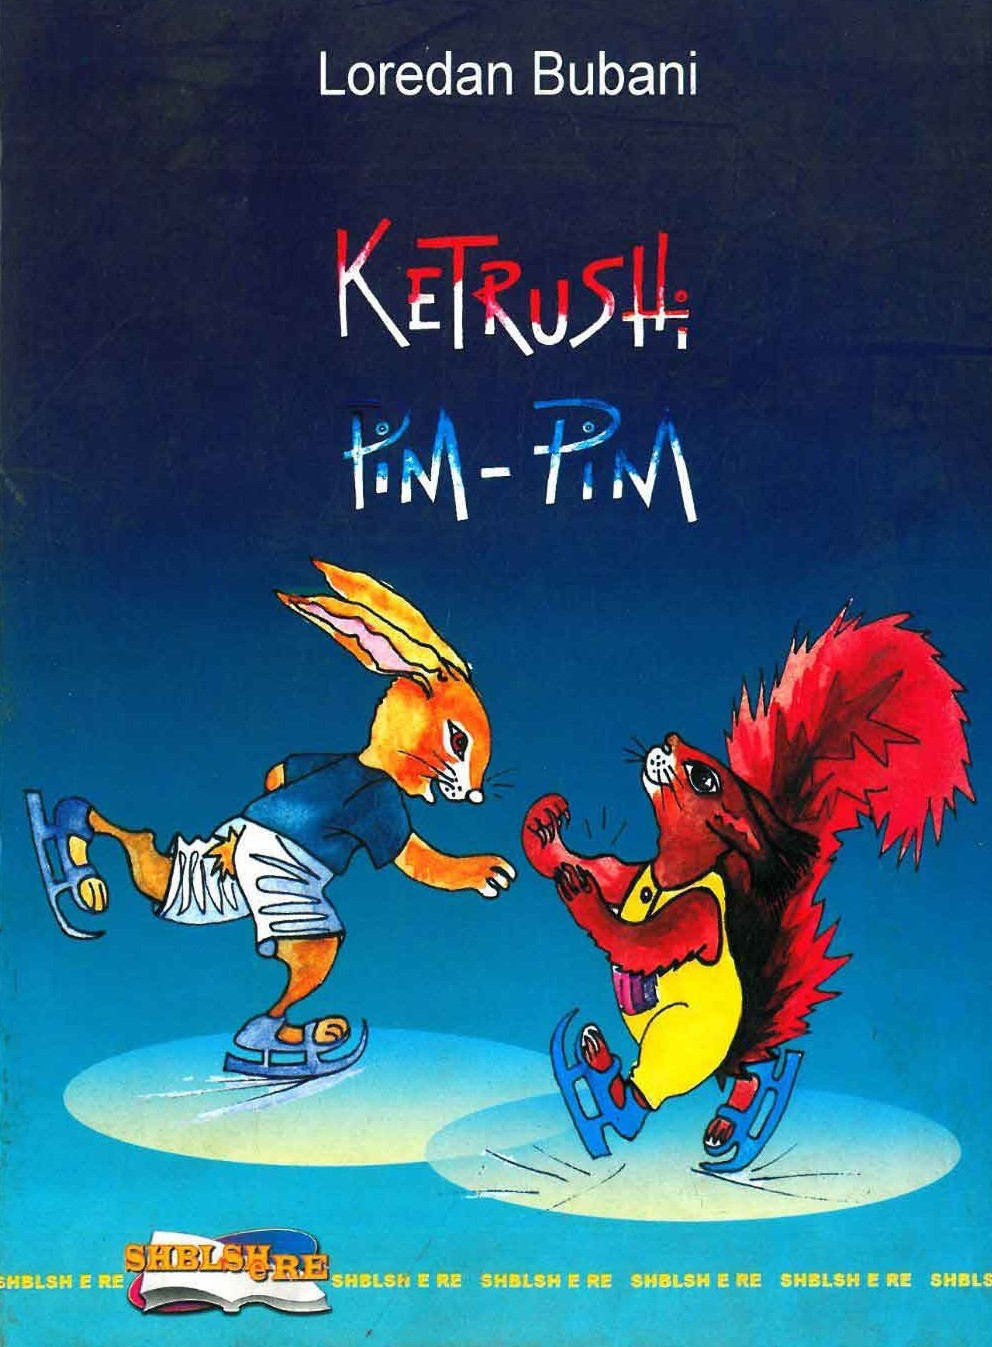 Ketrushi Pim - Pim